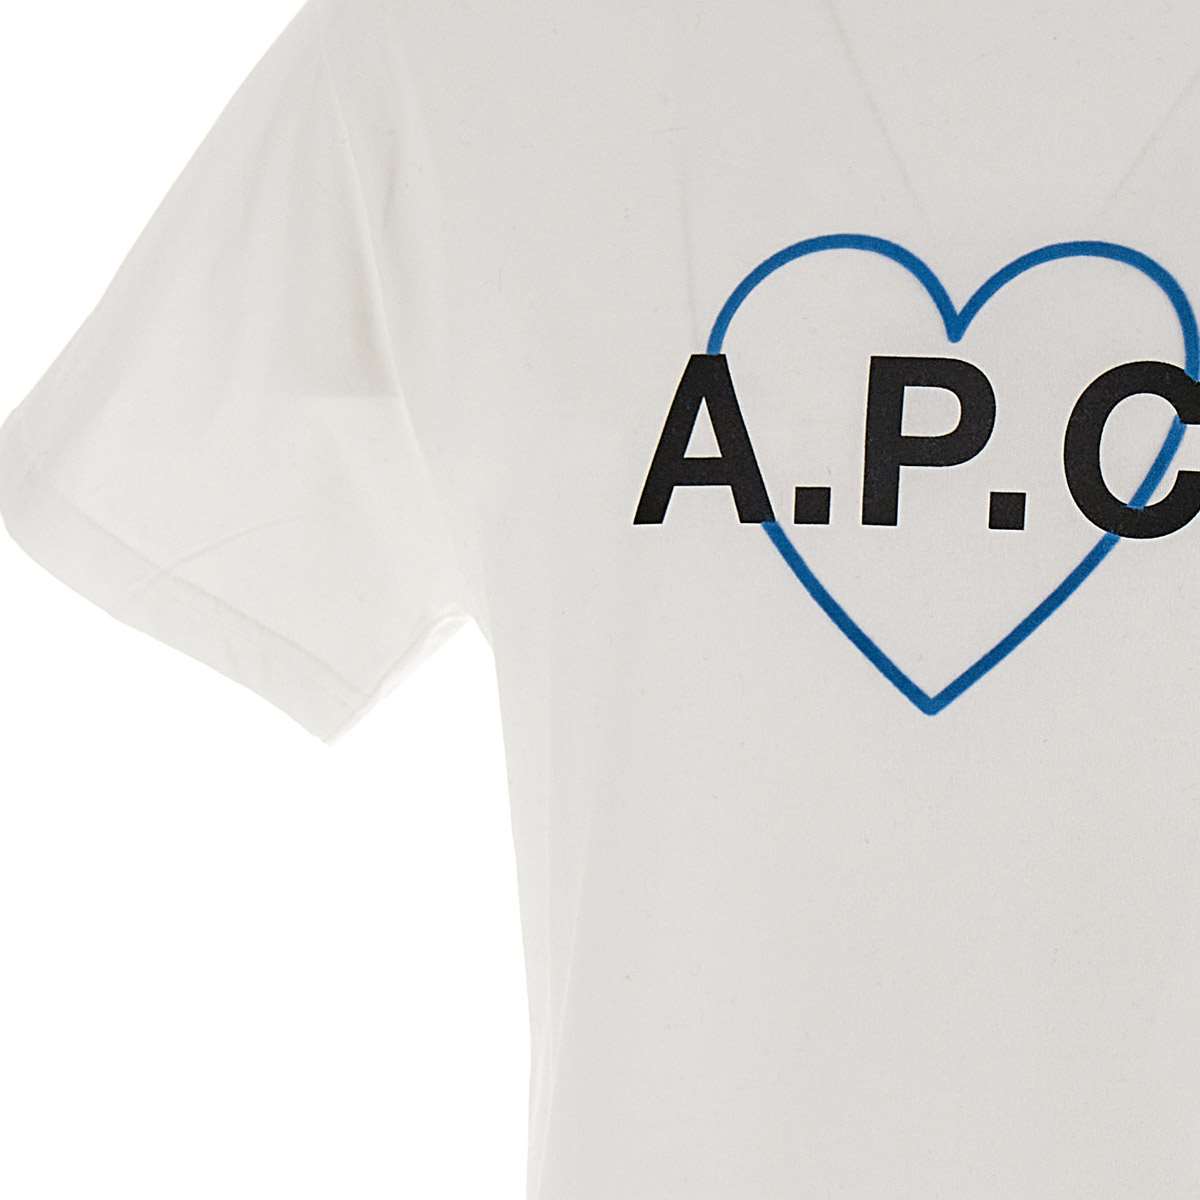 A.p.c. amore Cotton T-shirt